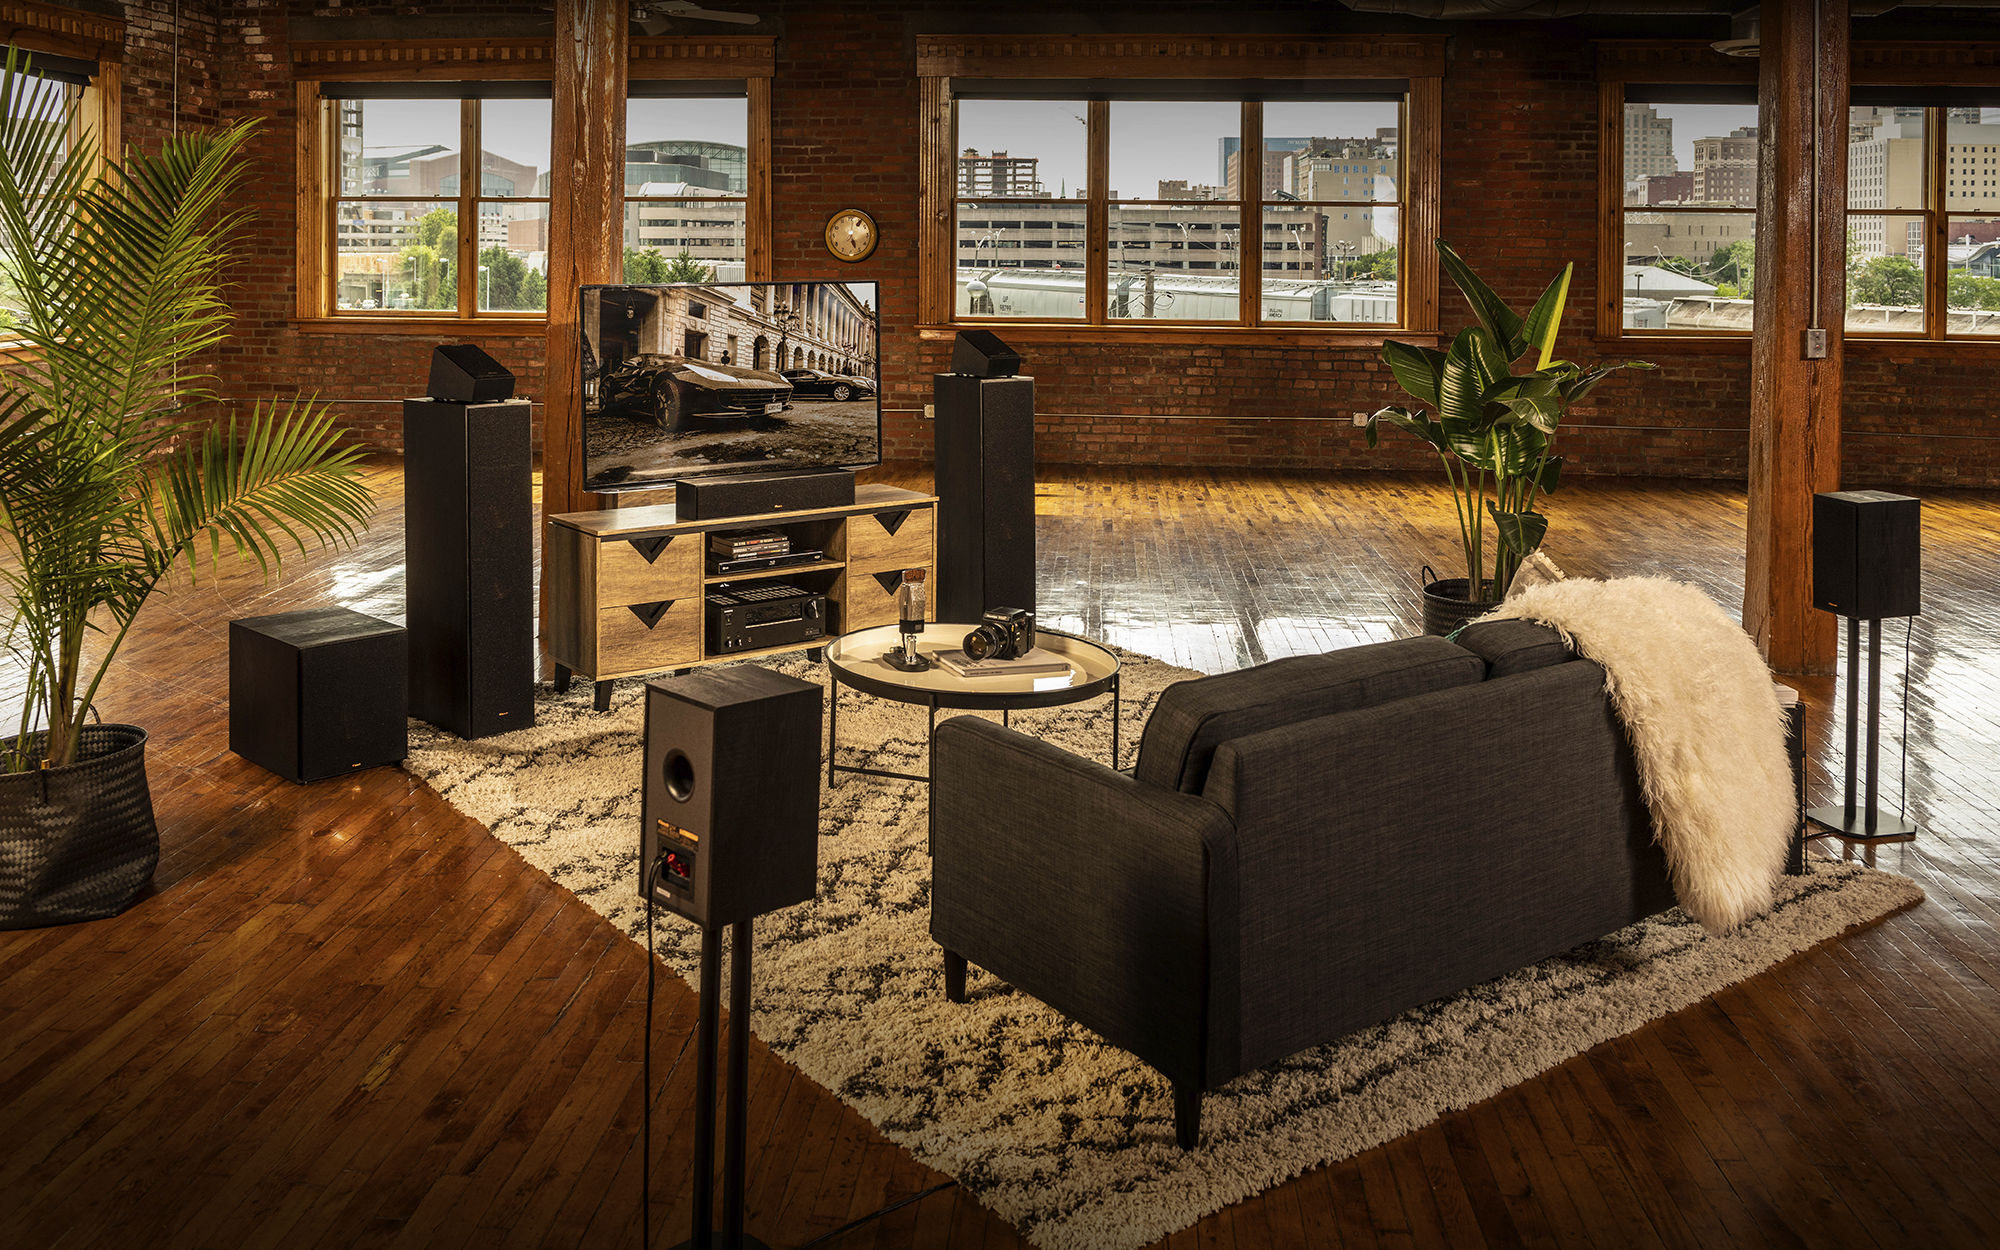 Klipsch speaker system with tv in living room